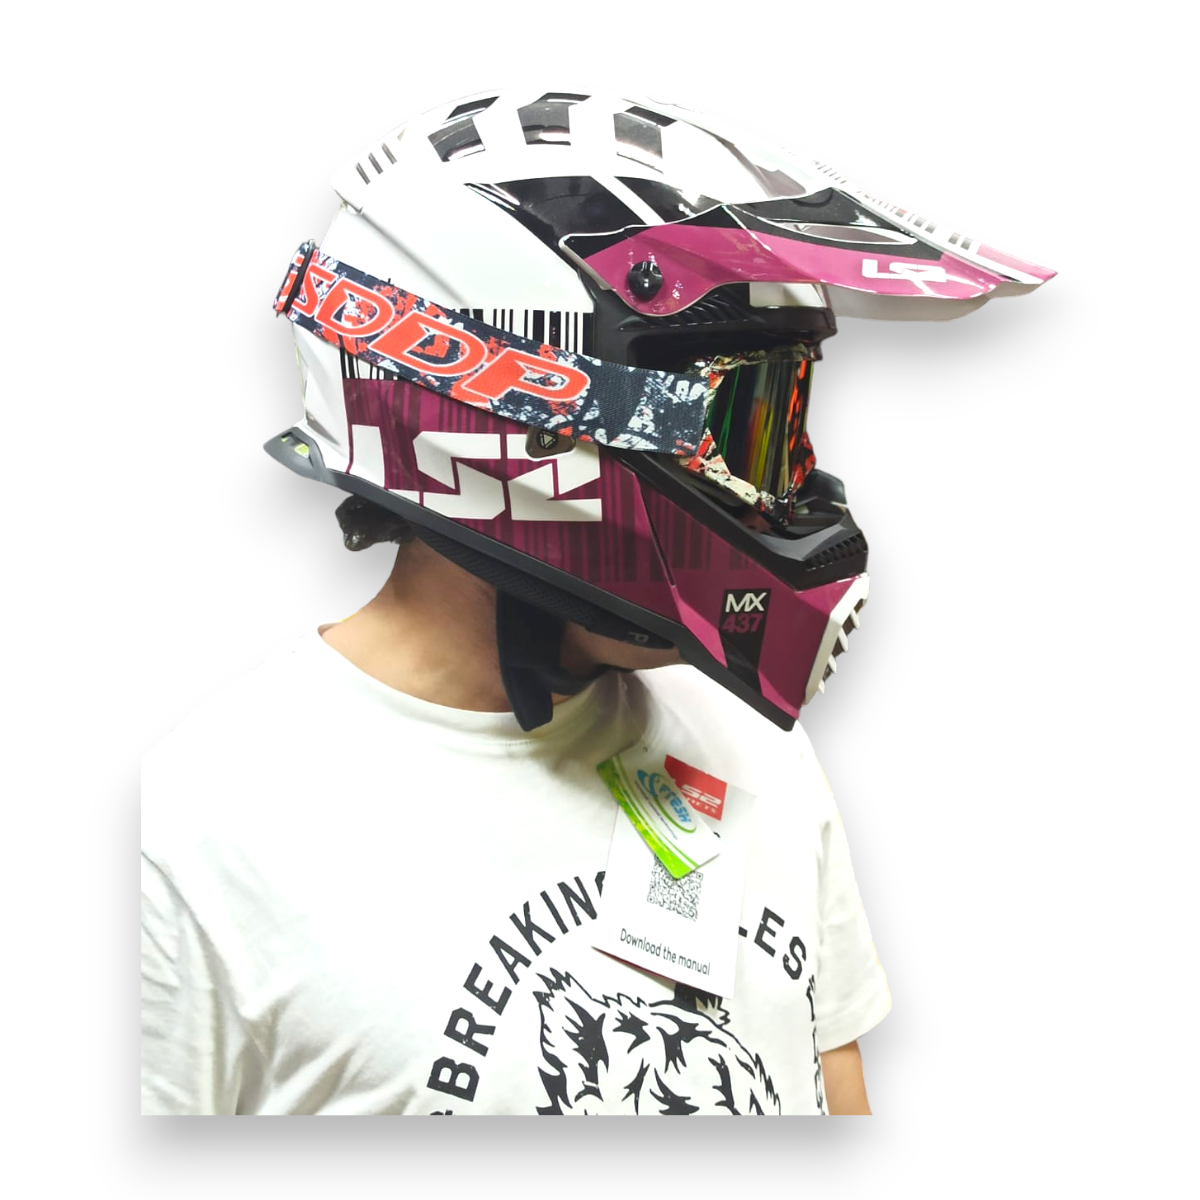 Очки для мотокросса BSDDP на мото шлем мотоциклиста, бело-черно-красные